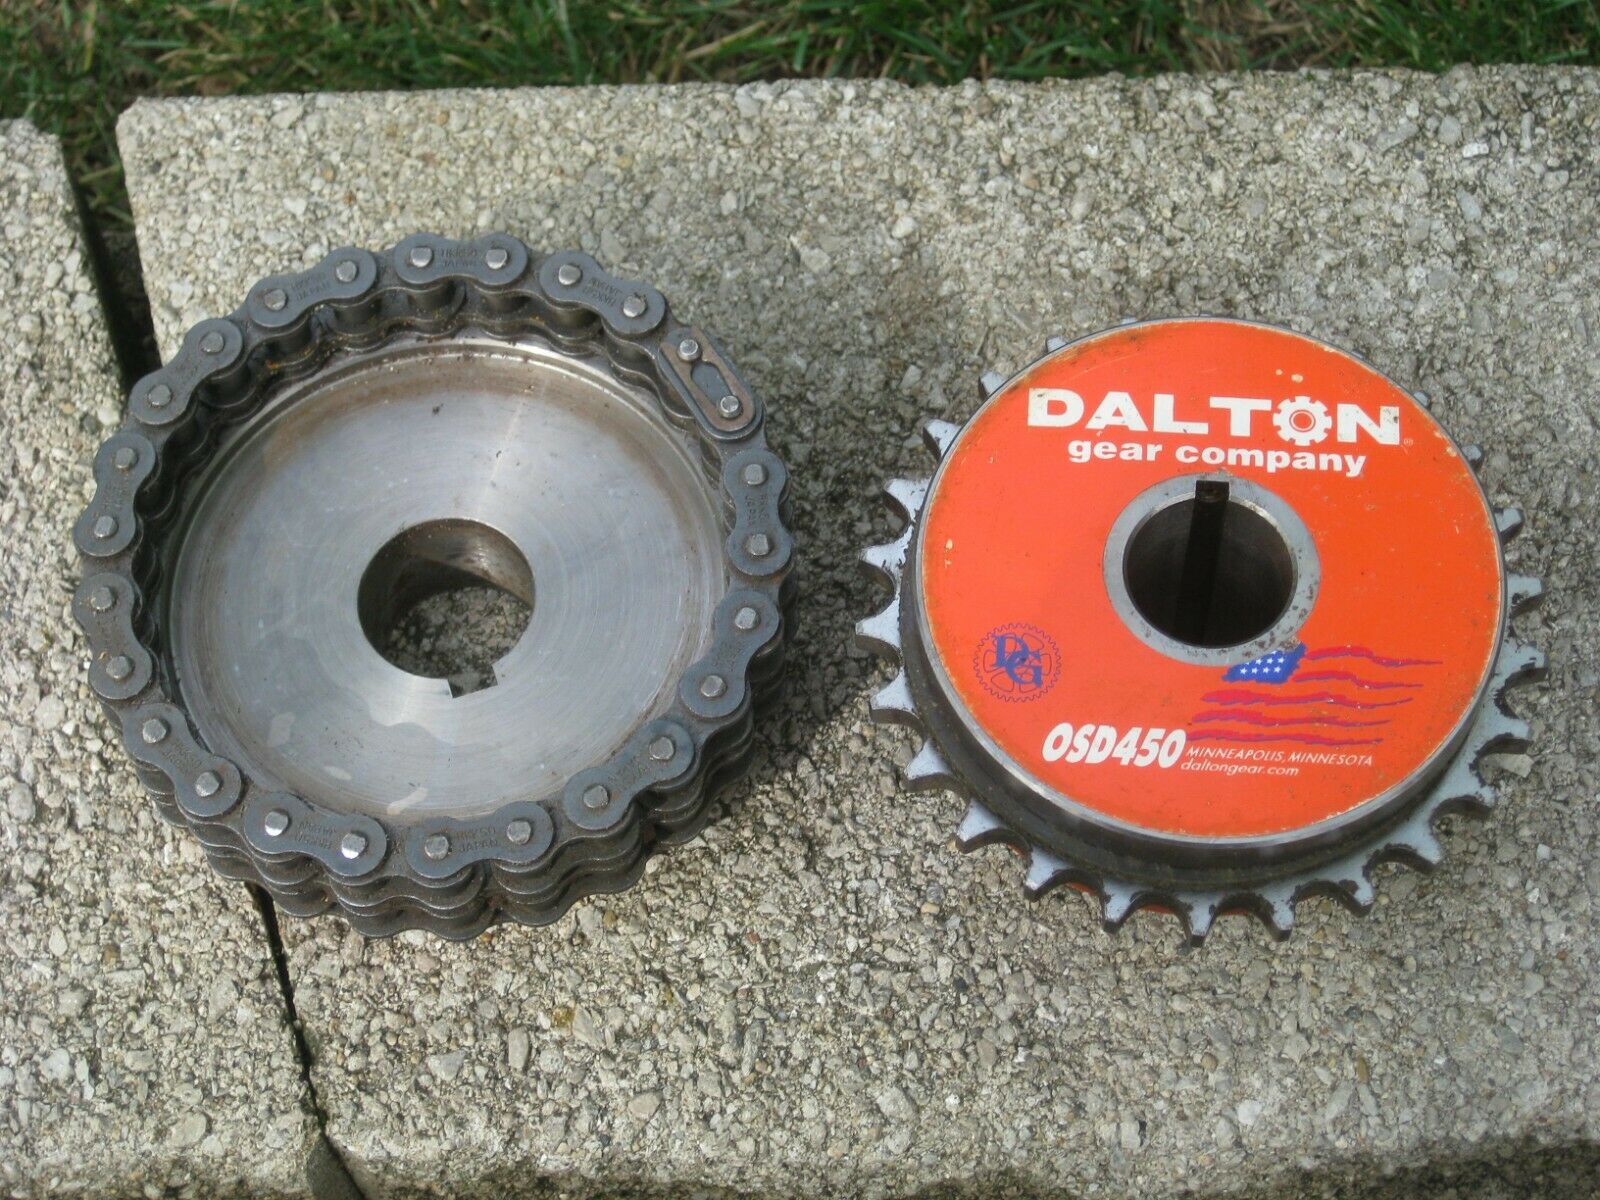 Dalton Gear Co. Osd450 Torque Limiter - Good Condition